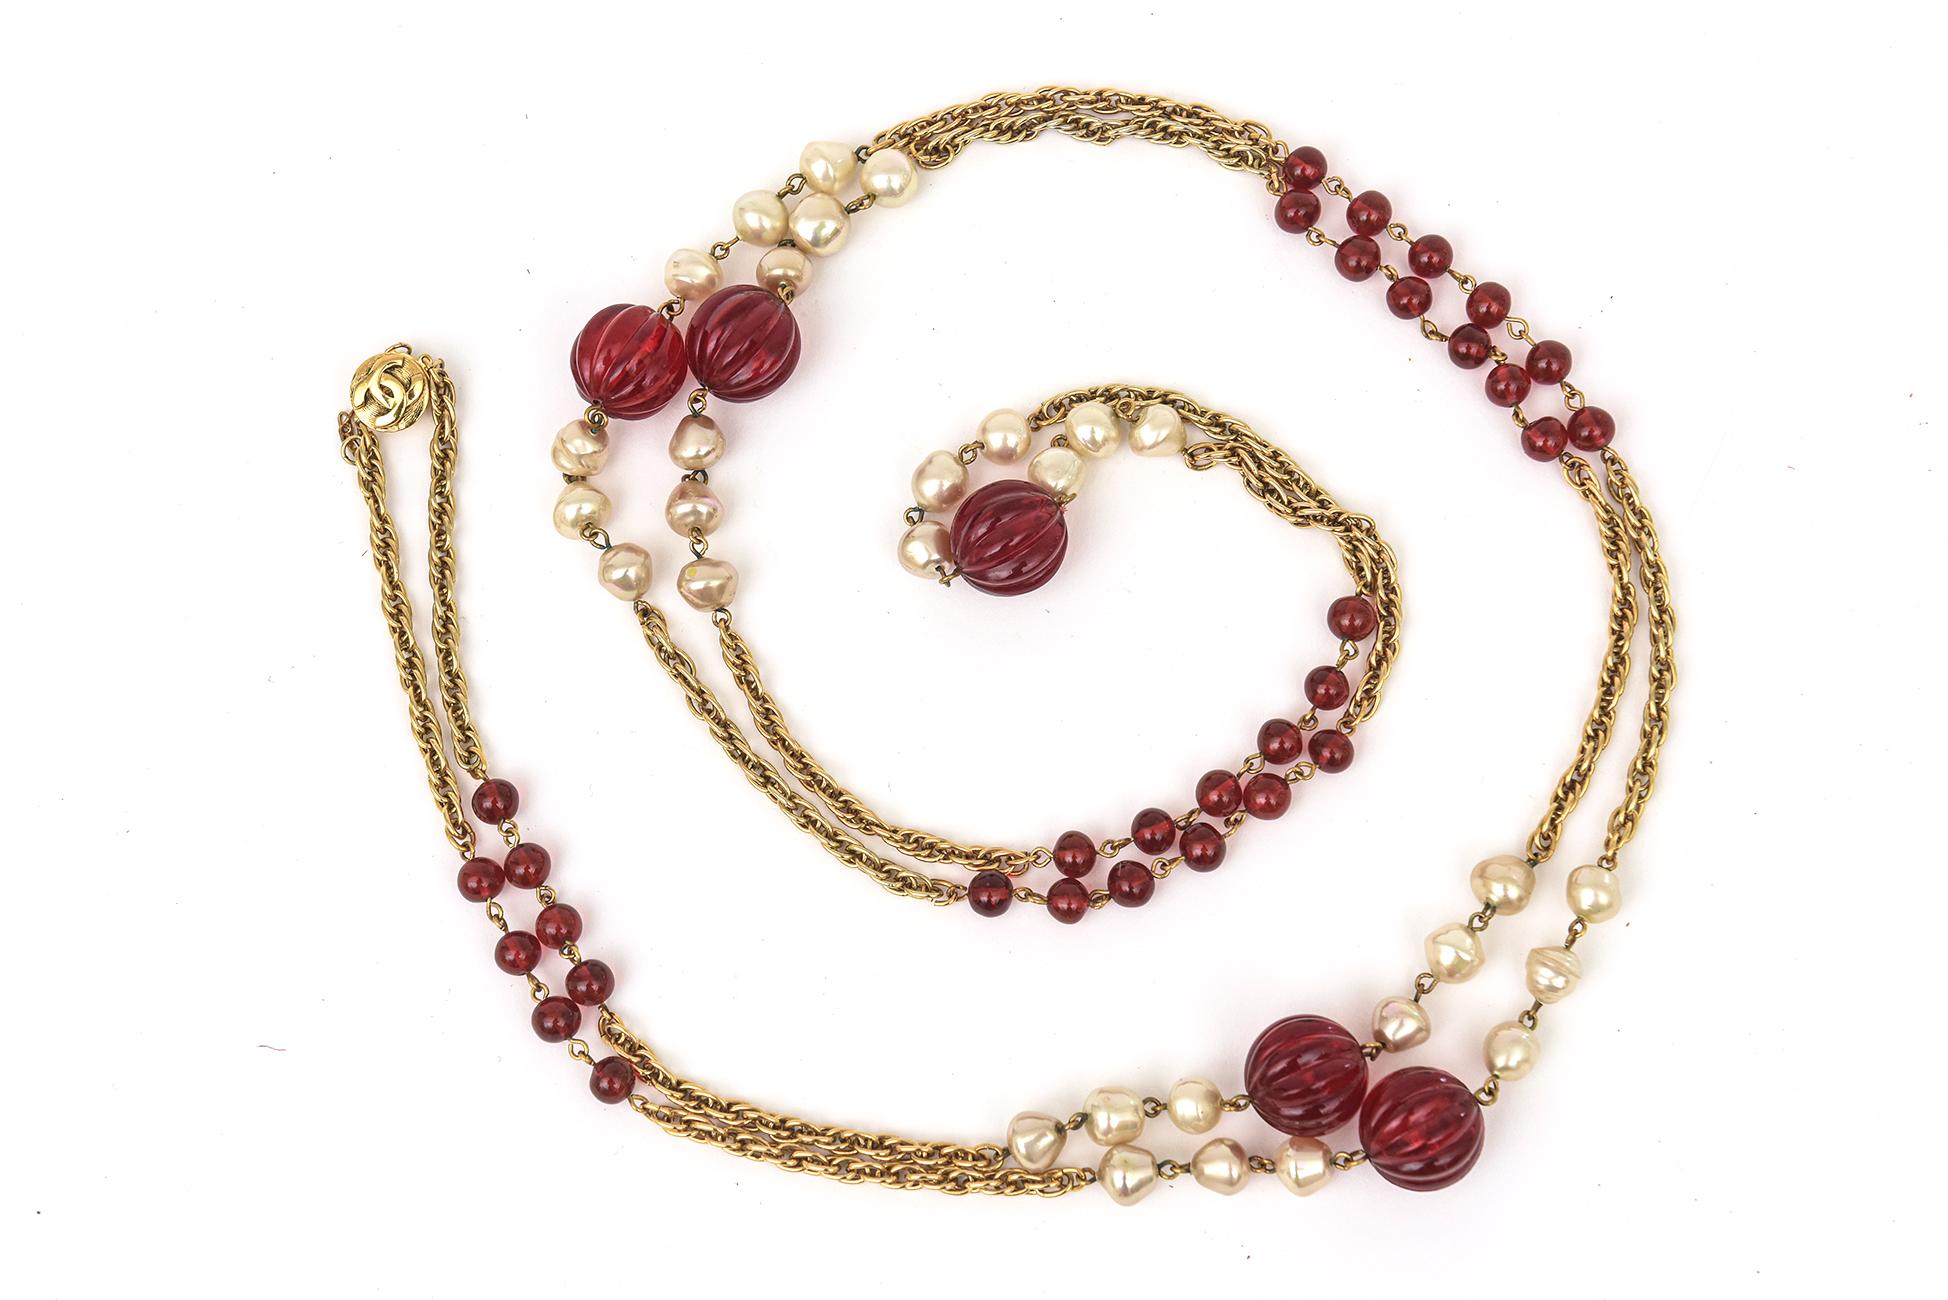 Ce fabuleux long collier Chanel sautoir vintage est composé de perles de verre rouge gripoix, de fausses perles intercalées le long de la chaîne à maillons en métal doré. Les perles de verre rouges sont de deux tailles différentes. Il peut